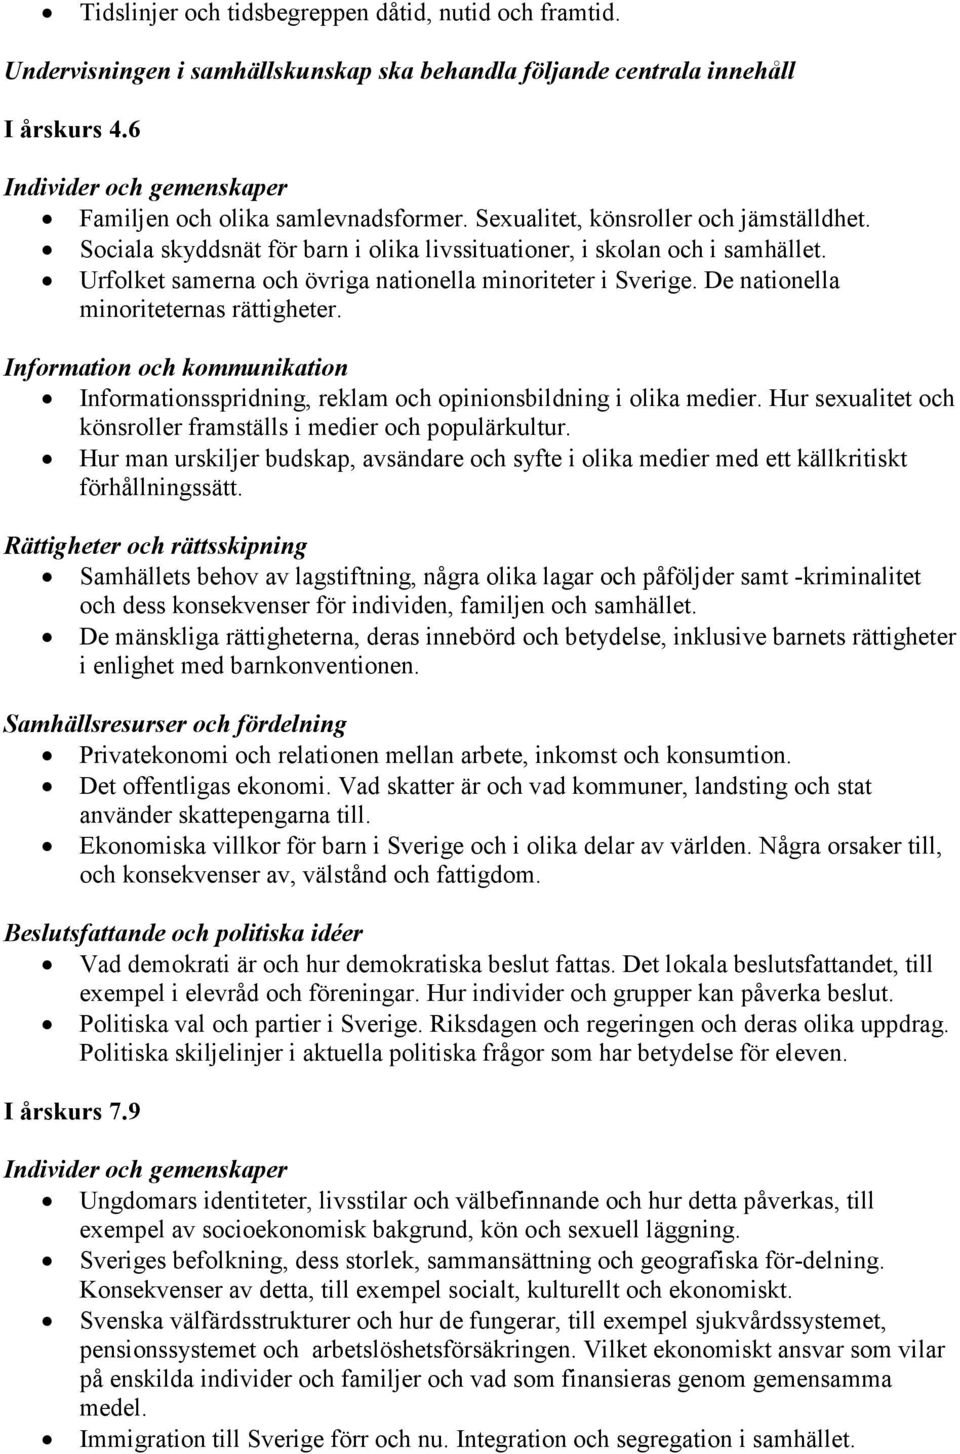 Urfolket samerna och övriga nationella minoriteter i Sverige. De nationella minoriteternas rättigheter. Information och kommunikation Informationsspridning, reklam och opinionsbildning i olika medier.